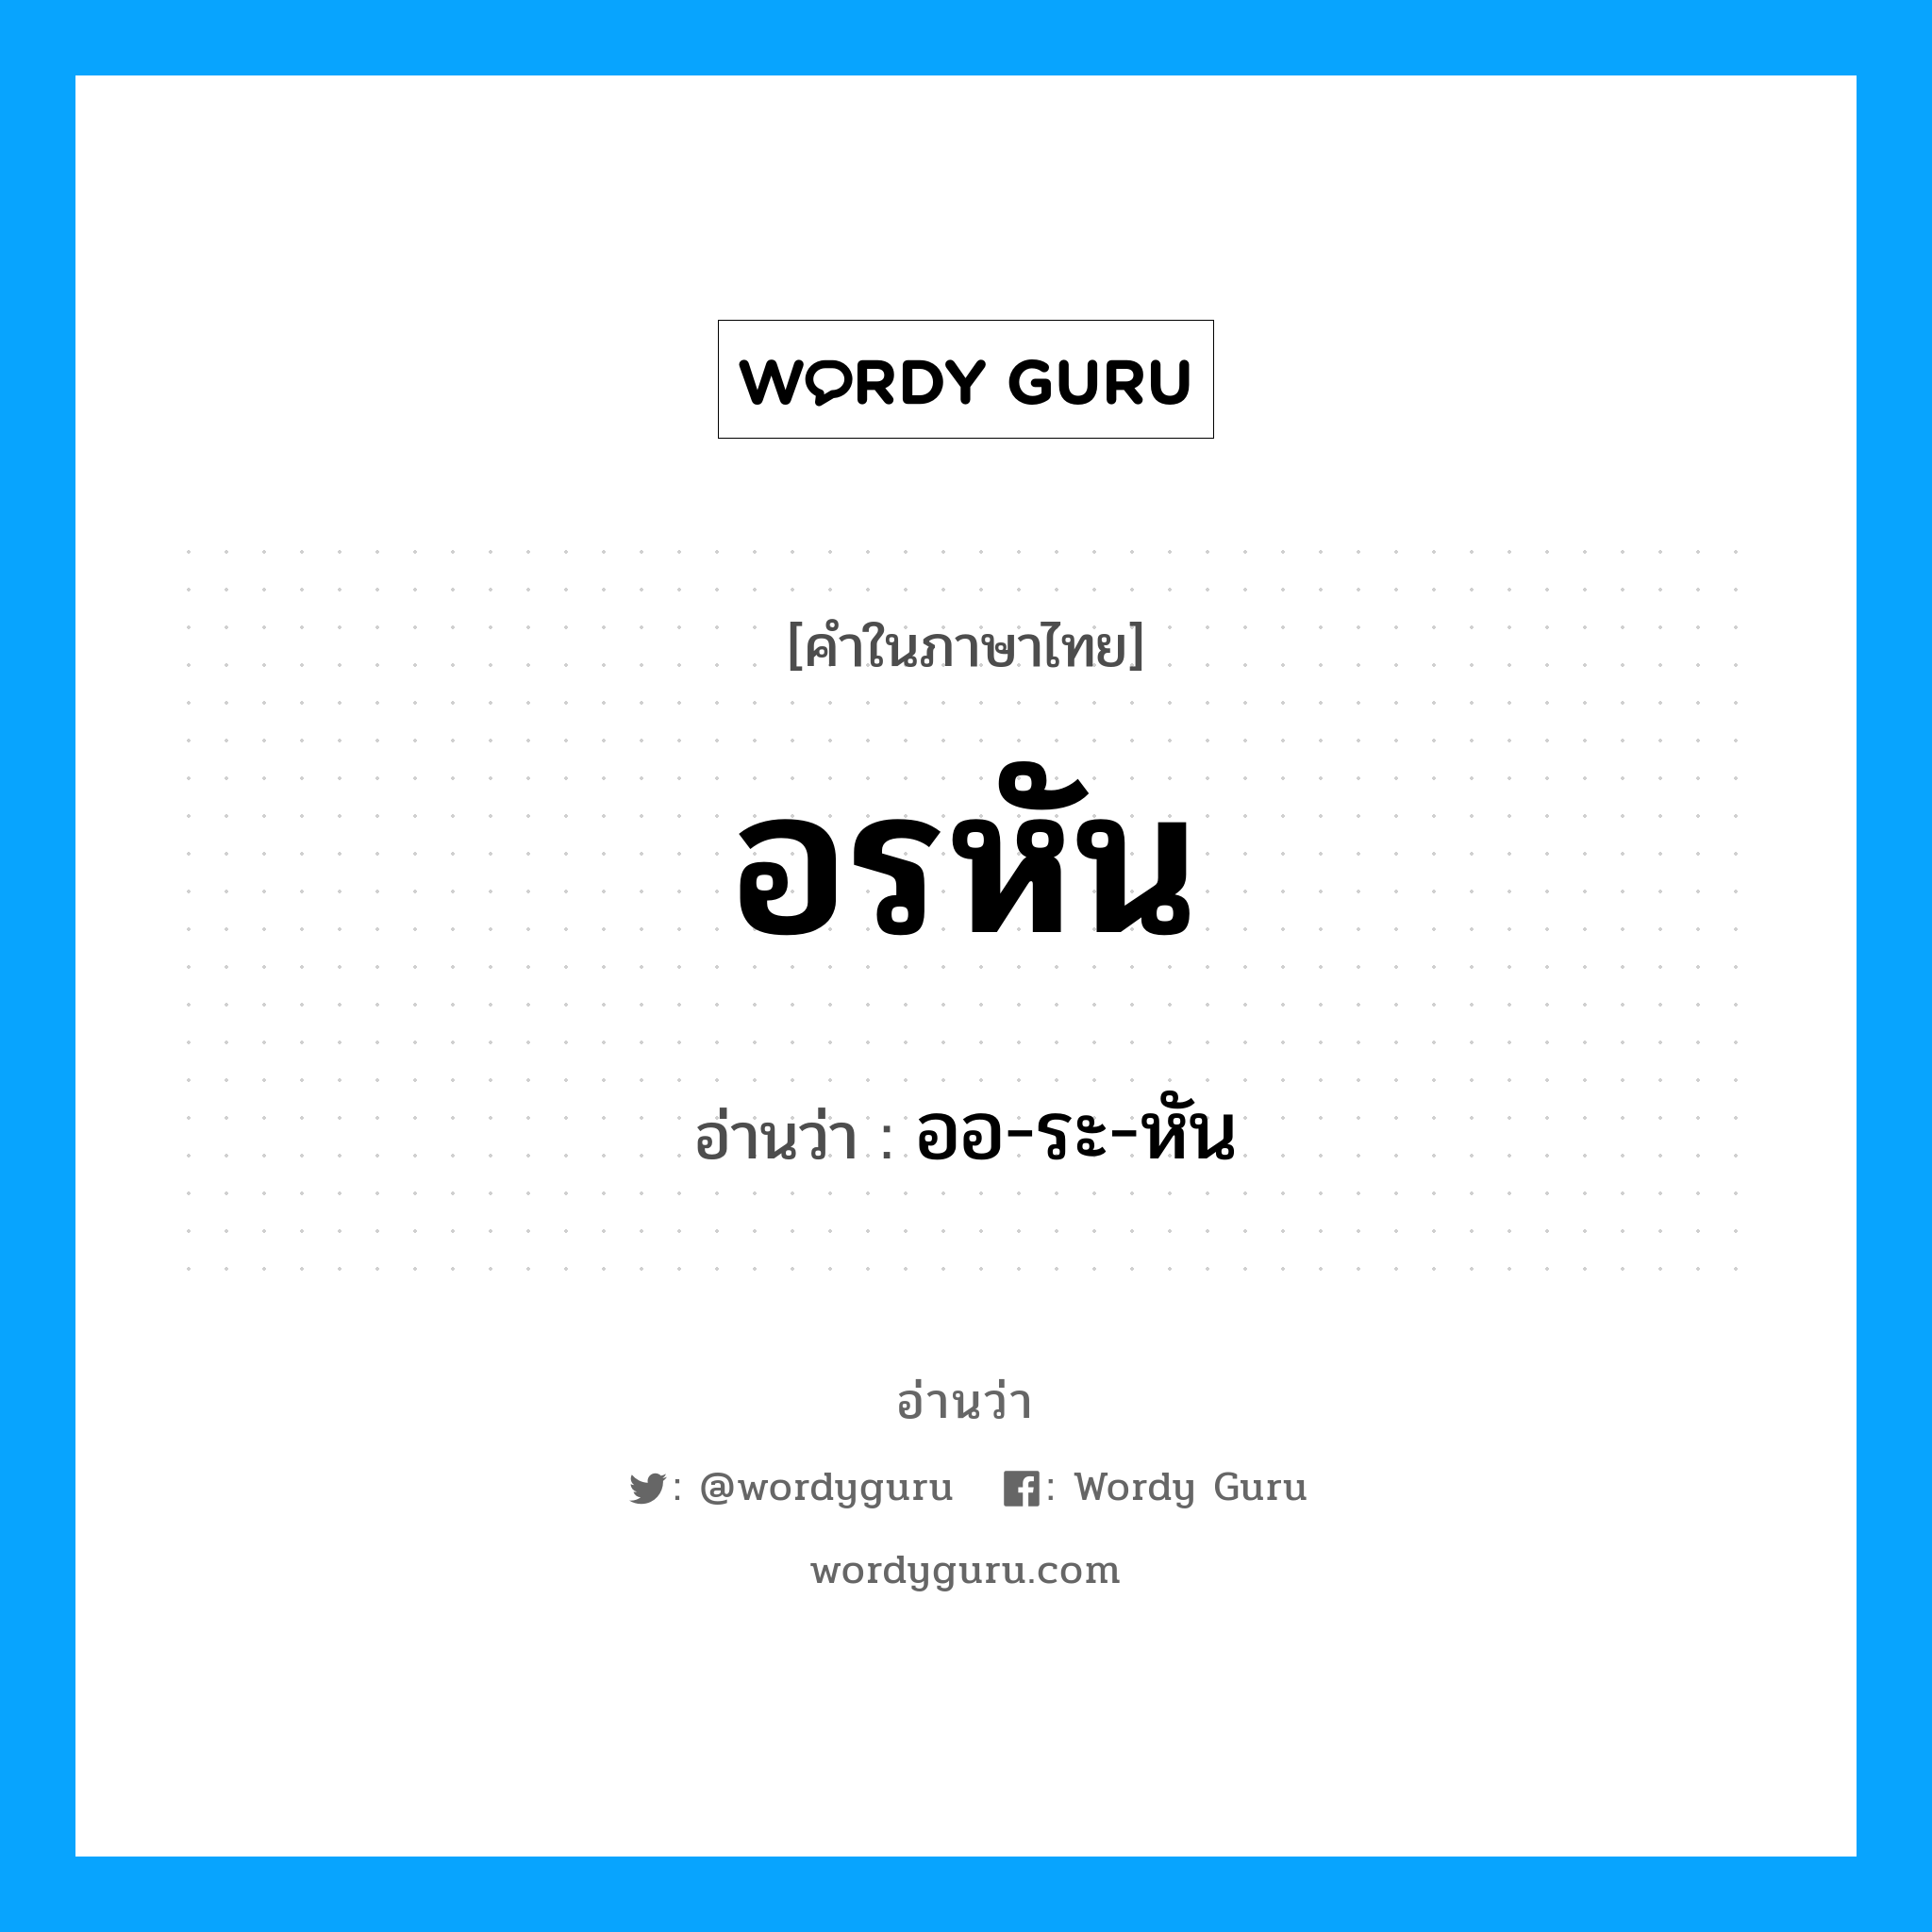 ออ-ระ-หัน เป็นคำอ่านของคำไหน?, คำในภาษาไทย ออ-ระ-หัน อ่านว่า อรหัน